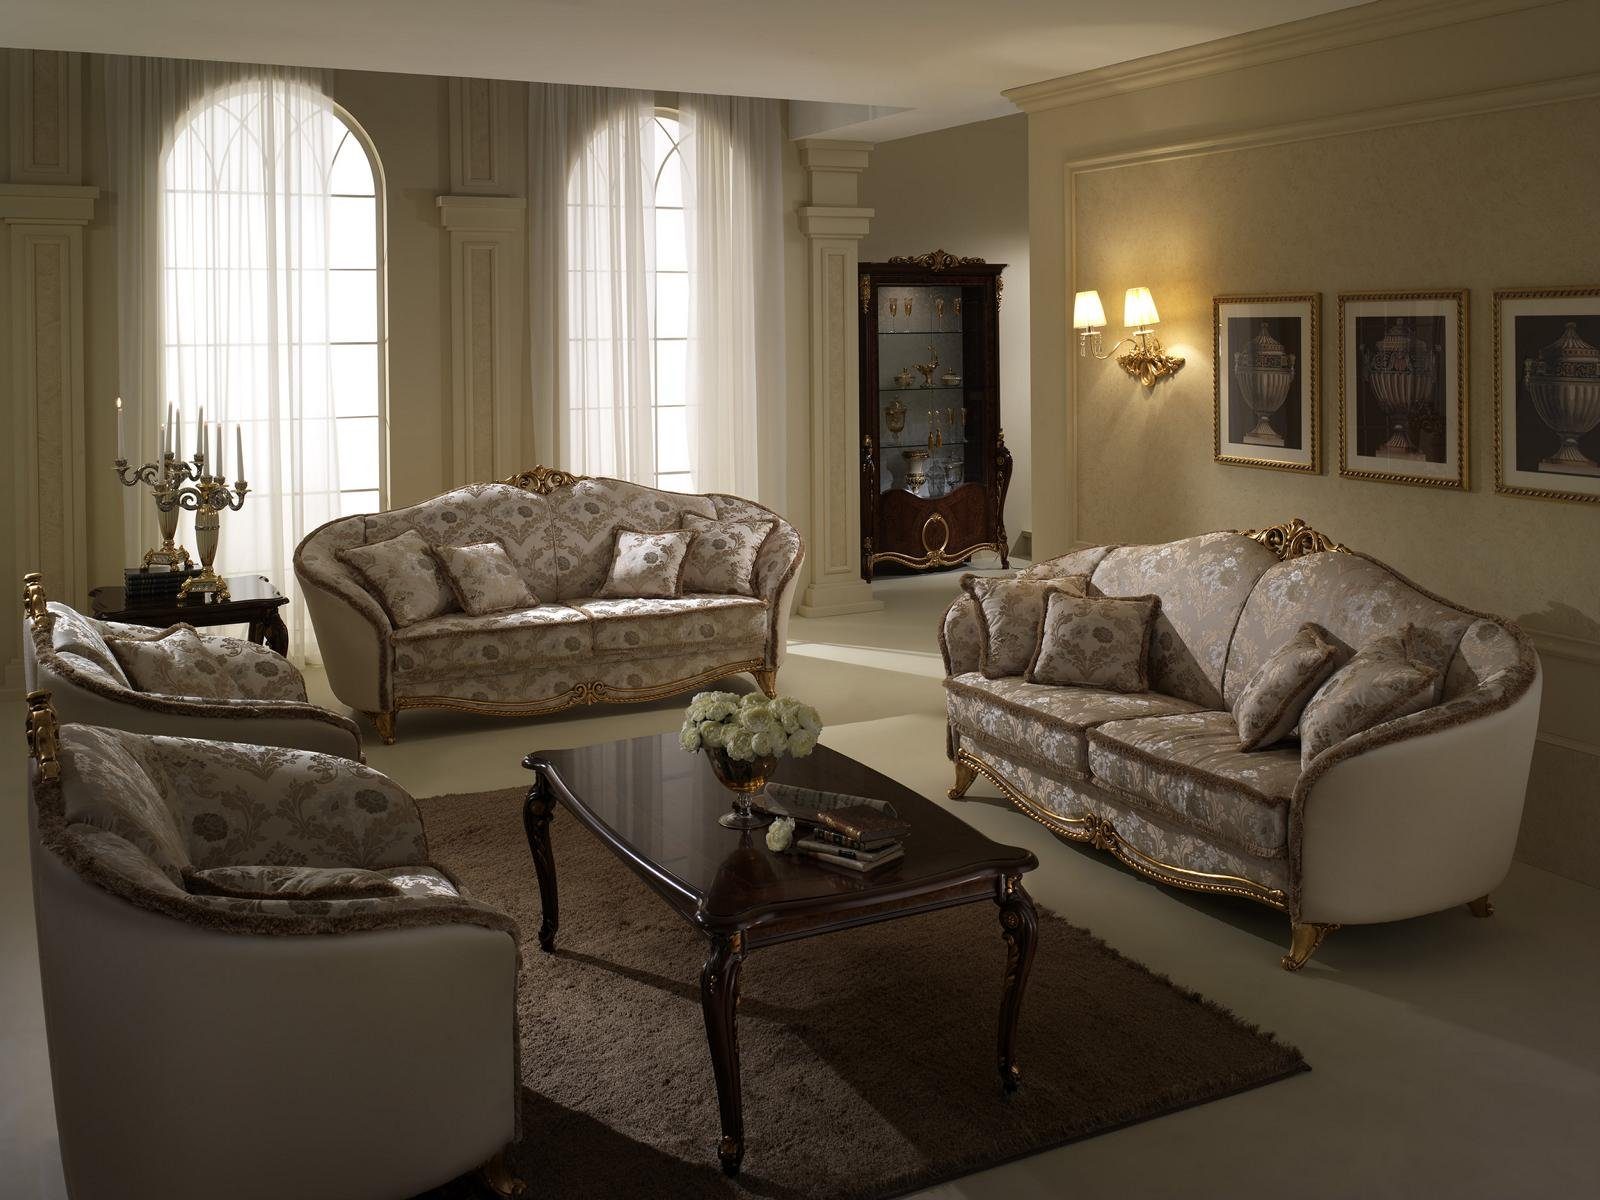 JVmoebel Wohnzimmer-Set, Luxus Klasse 3+2+1 Italienische Möbel Sofagarnitur Couch Sofa Neu arredoclassic™